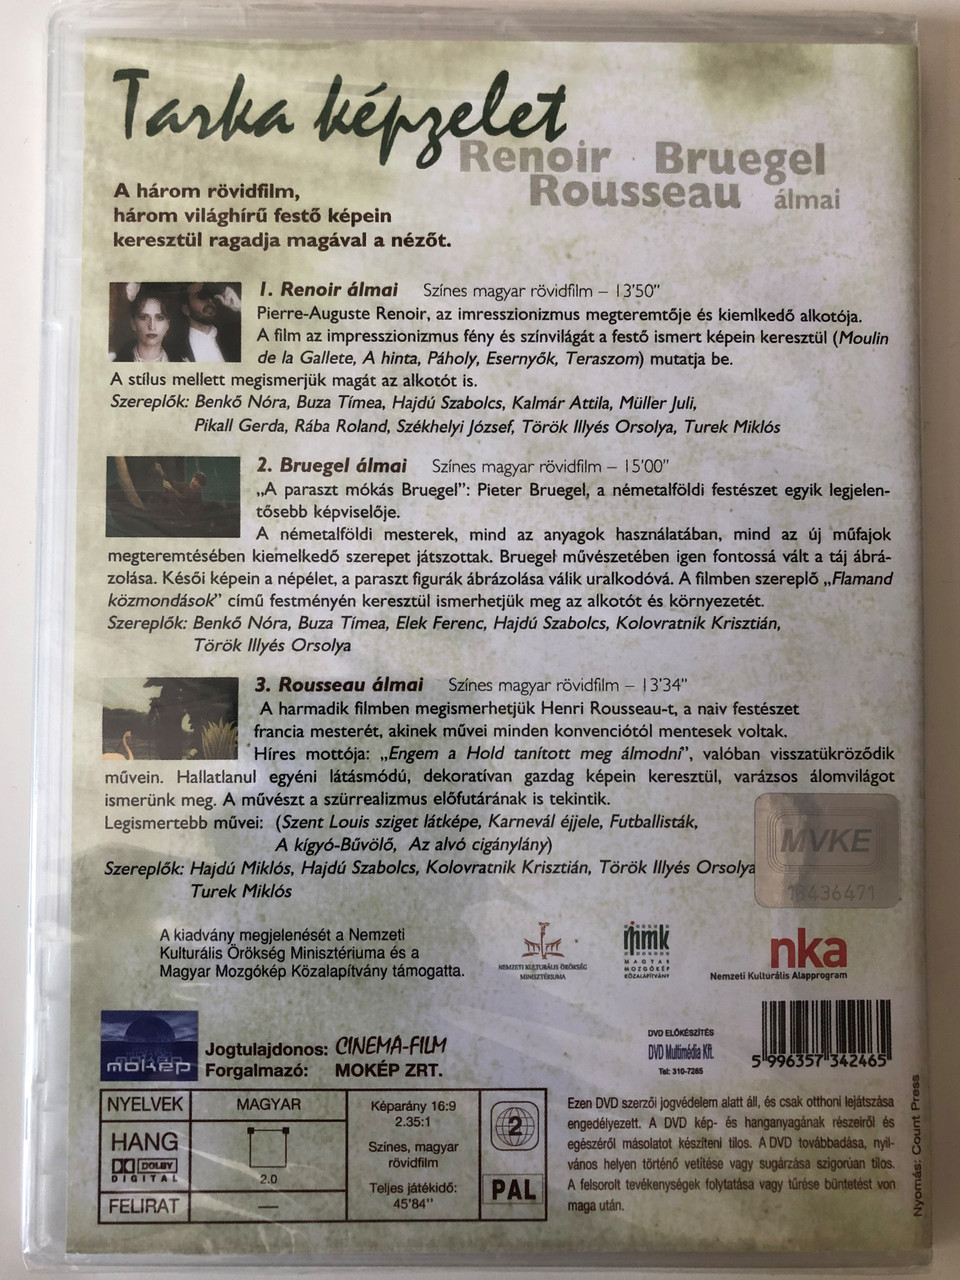 Tarka képzelet DVD 2003 / Directed by Groó Diana / 3 Hungarian short movies  / Starring: Benkő Nóra, Buza Tímea, Hajdú Szabolcs, Pikali Gerda / 1.  Renoir álmai, 2. Bruegel álmai, 3. Rousseau álmai - bibleinmylanguage